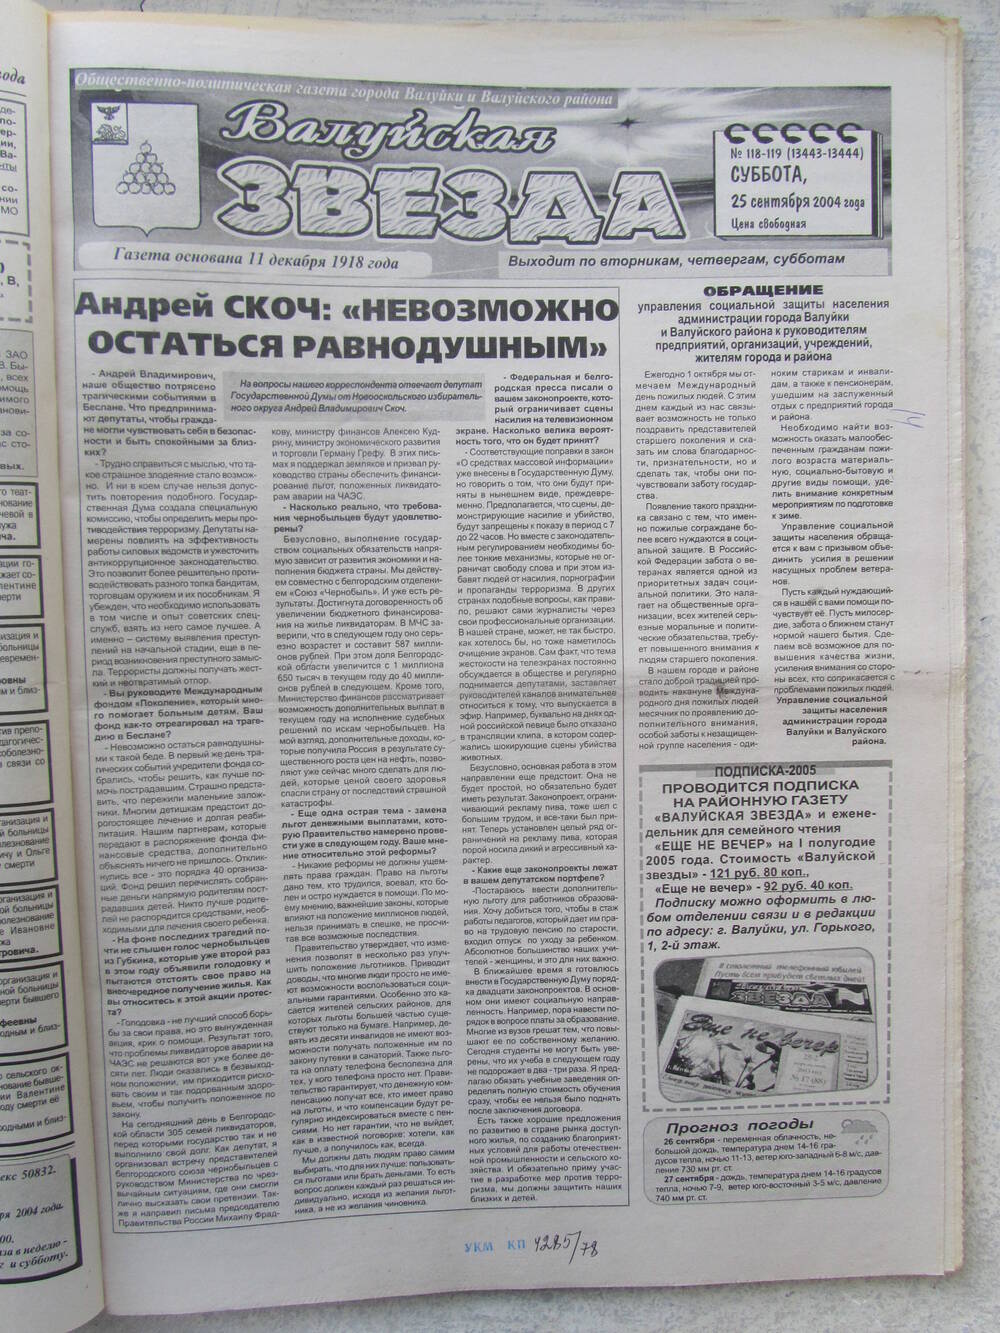 Газета Валуйская звезда №118-119 от 25.09.2004 г